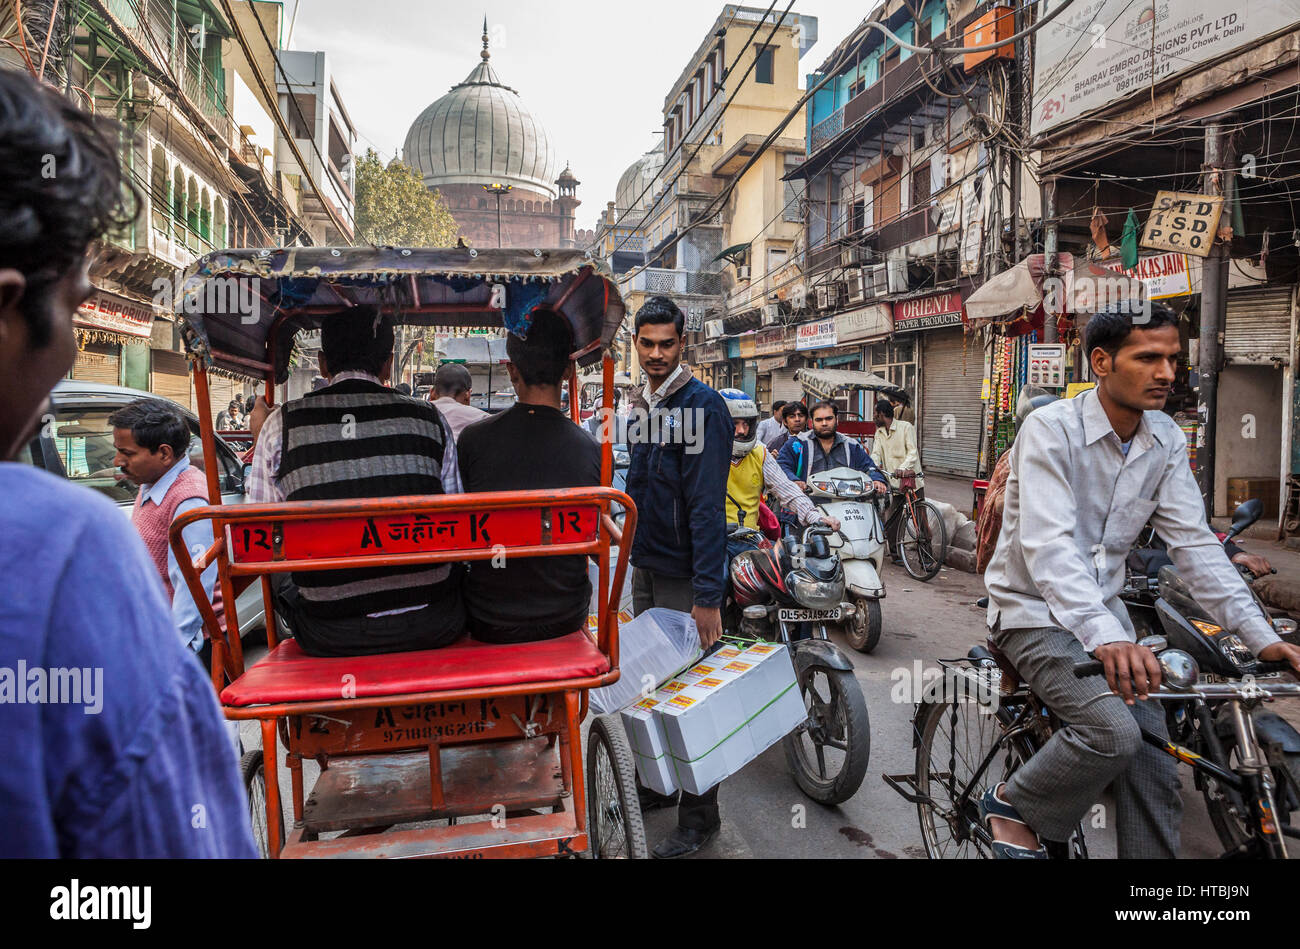 A view down Chawri Bazar Rd in Chandni Chouk, Old Delhi, India. Stock Photo